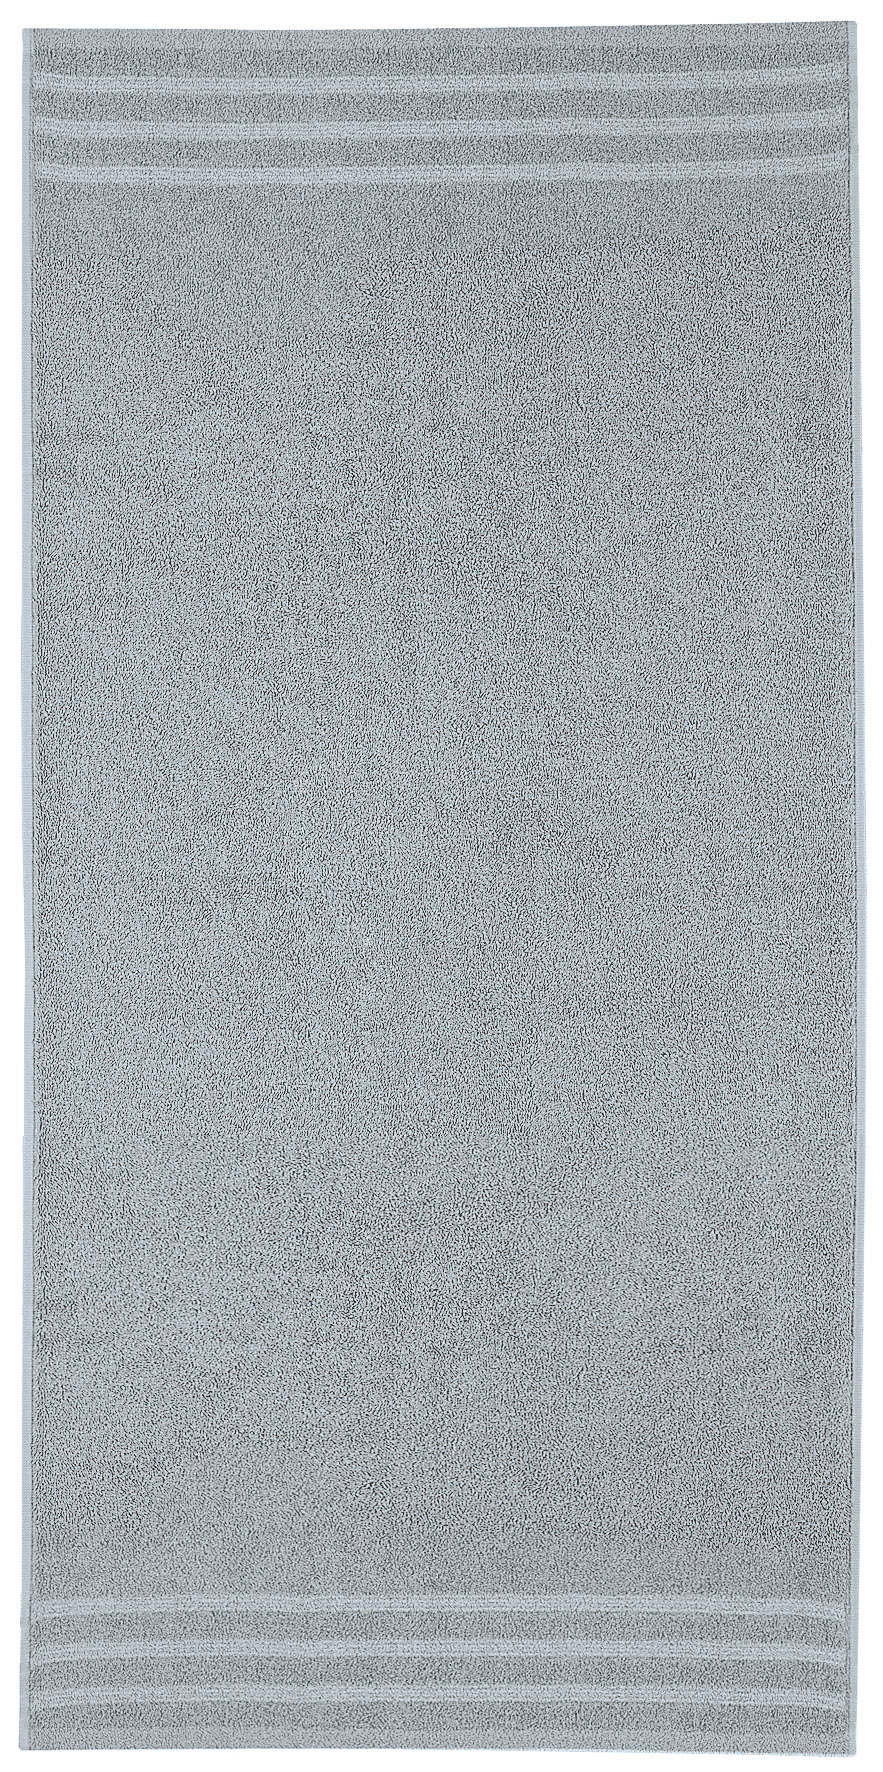 Duschtuch, Royal Platin, 70x140 cm